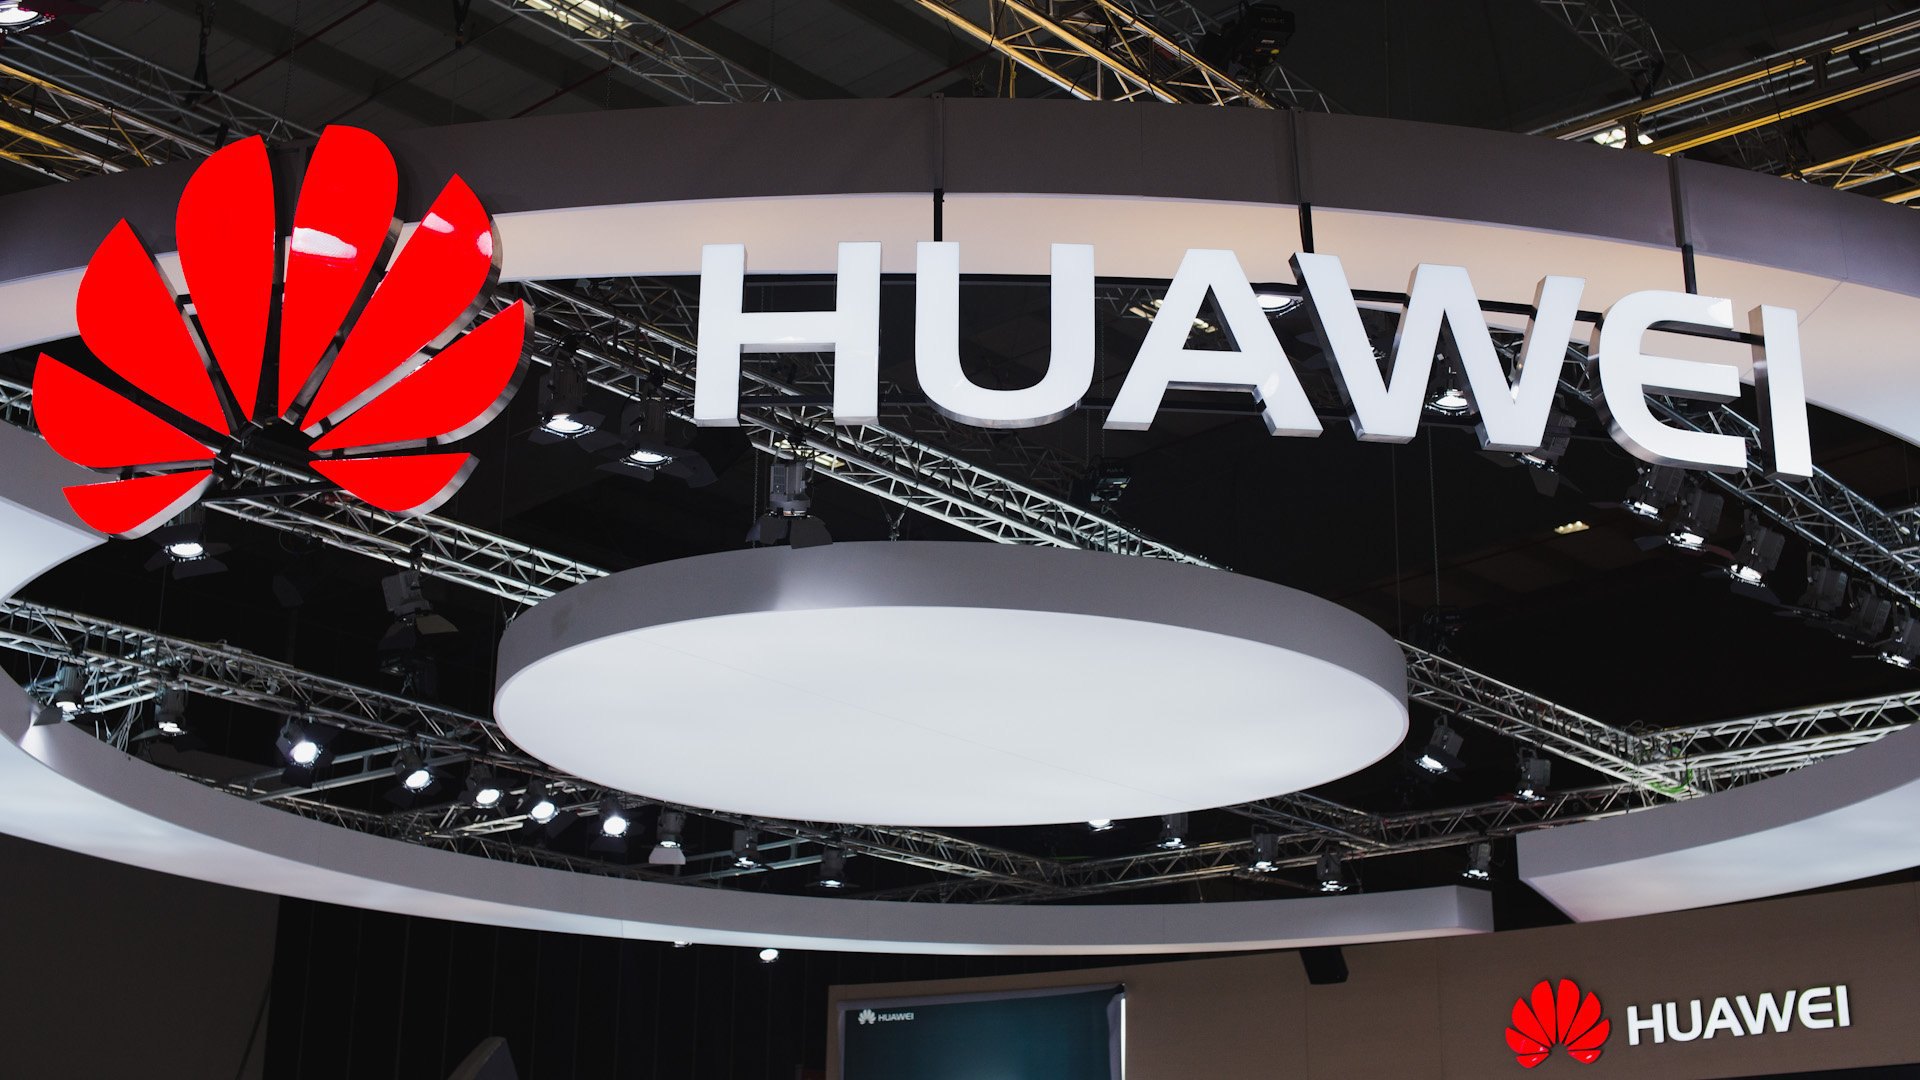 Huawei promete un smartphone flexible y con 5G para mediados del 2019